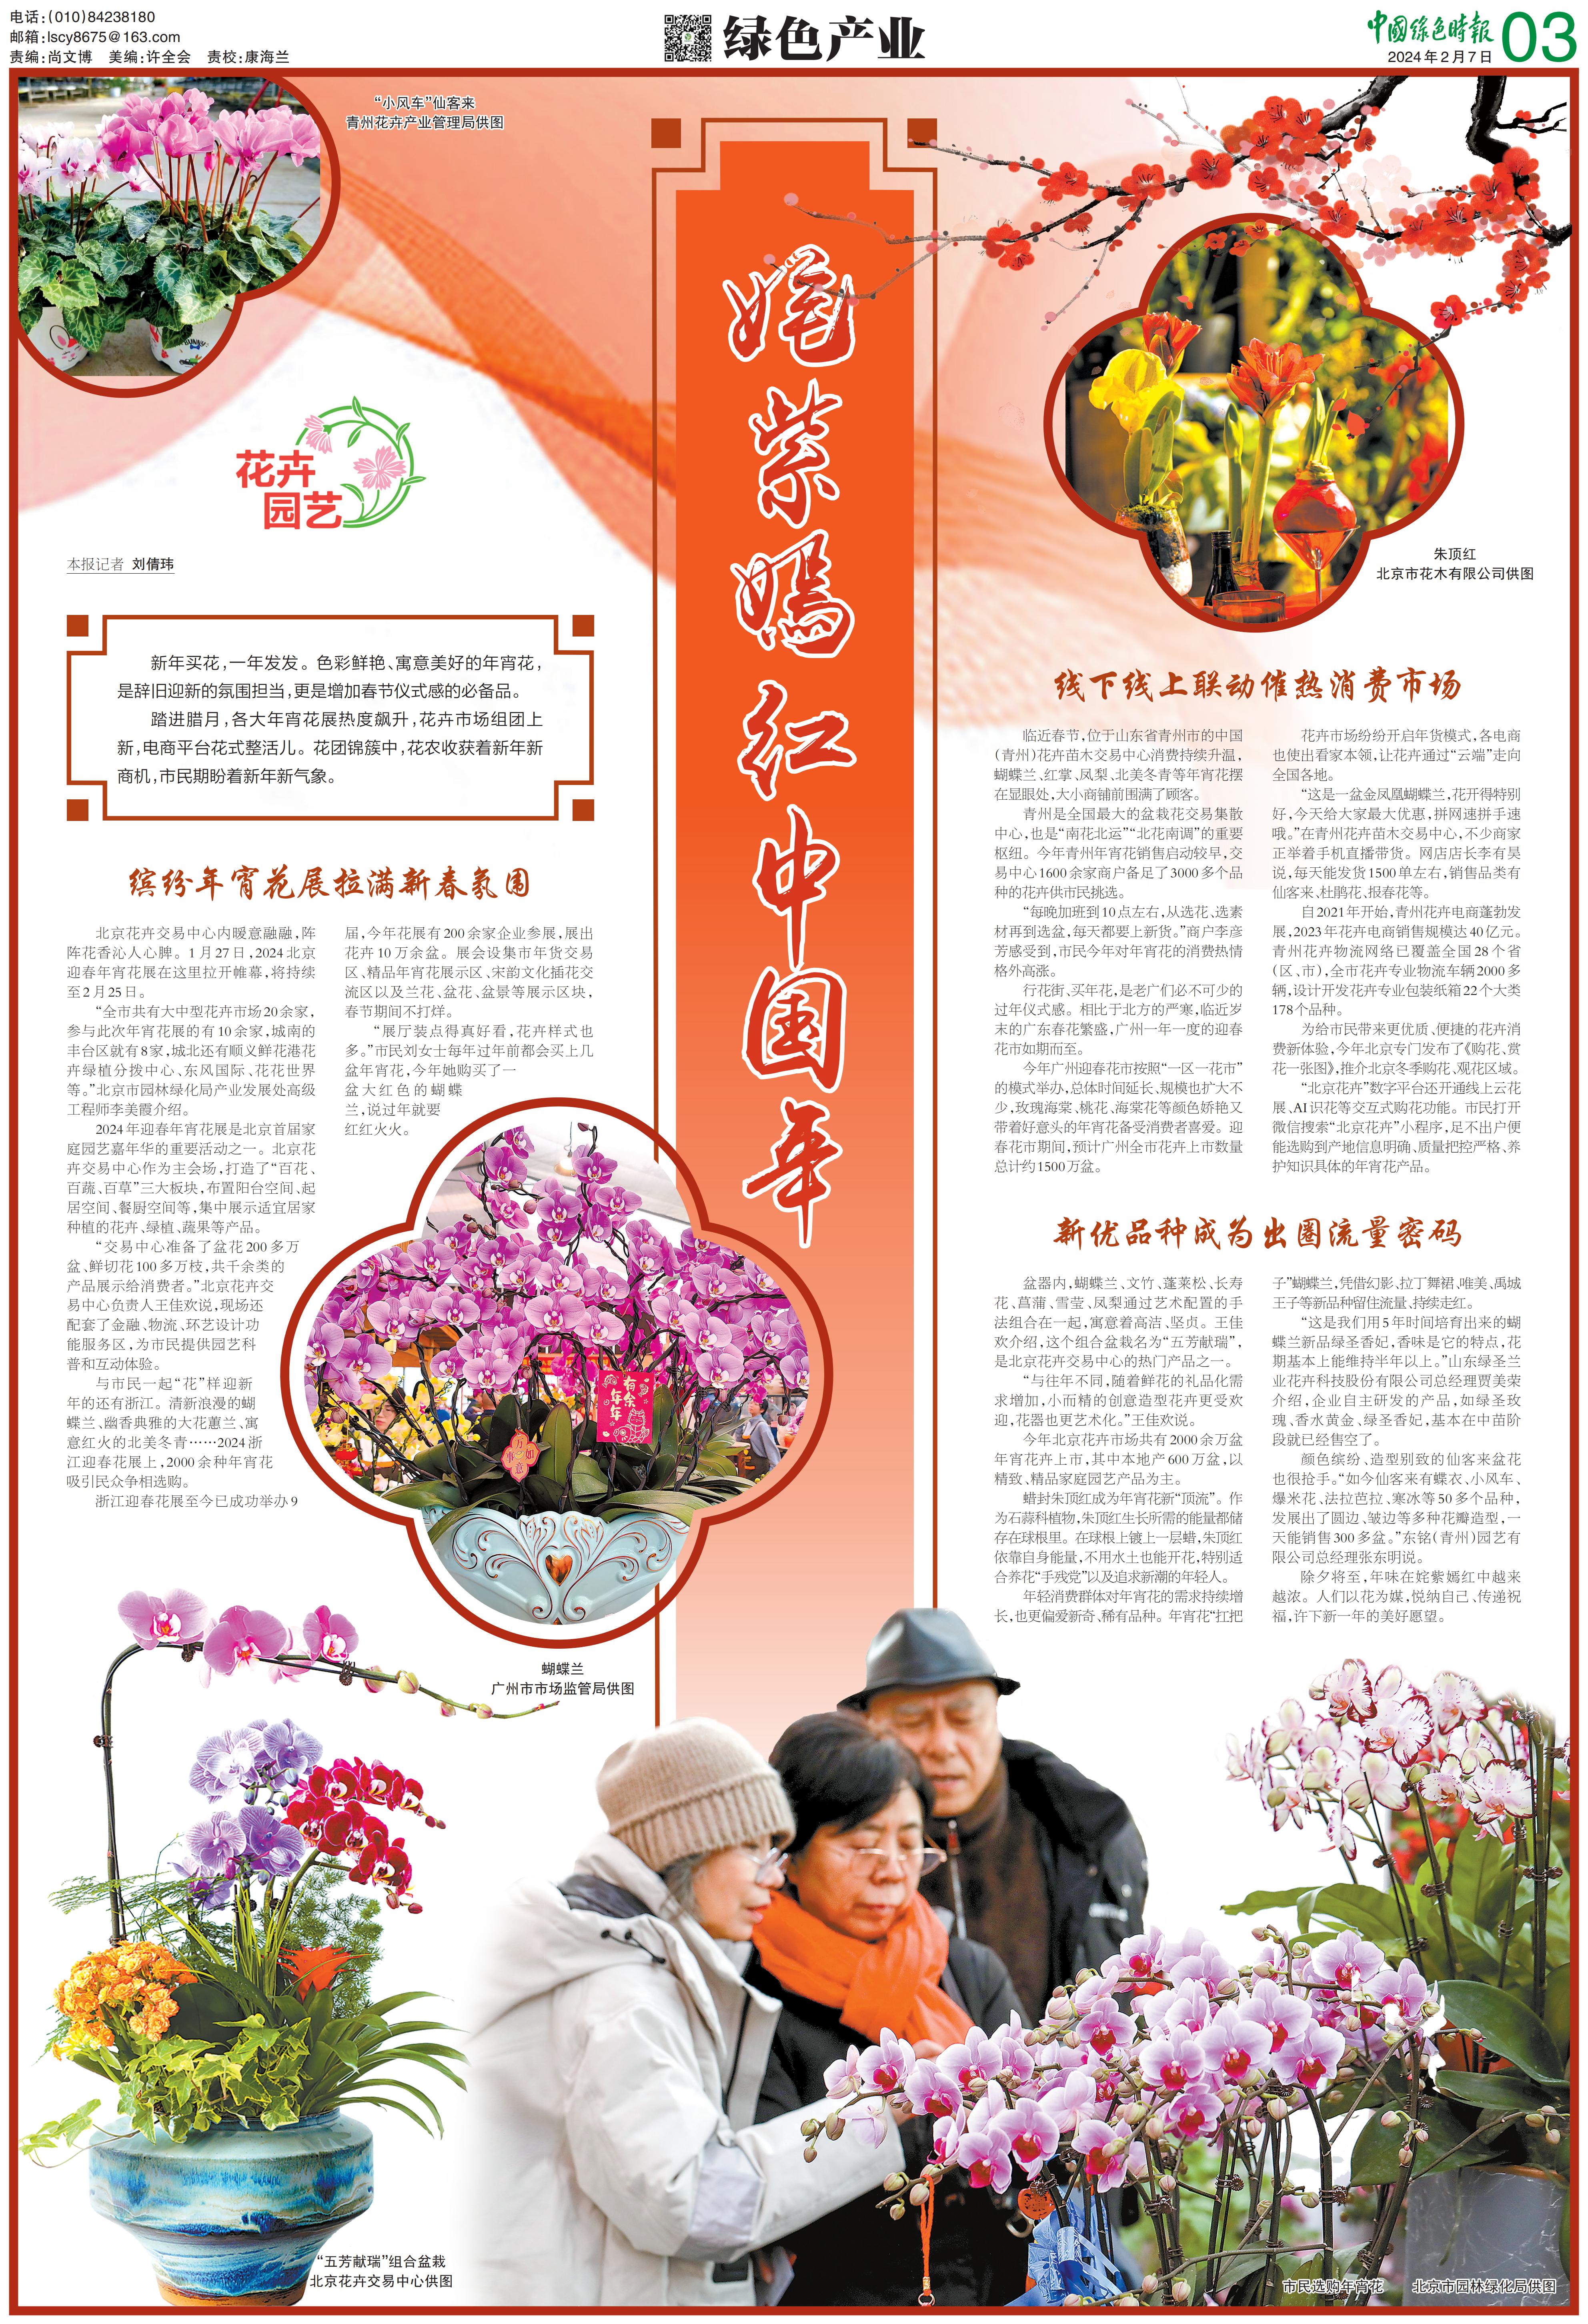 0207中国绿色时报-姹紫嫣红中国年_00.jpg